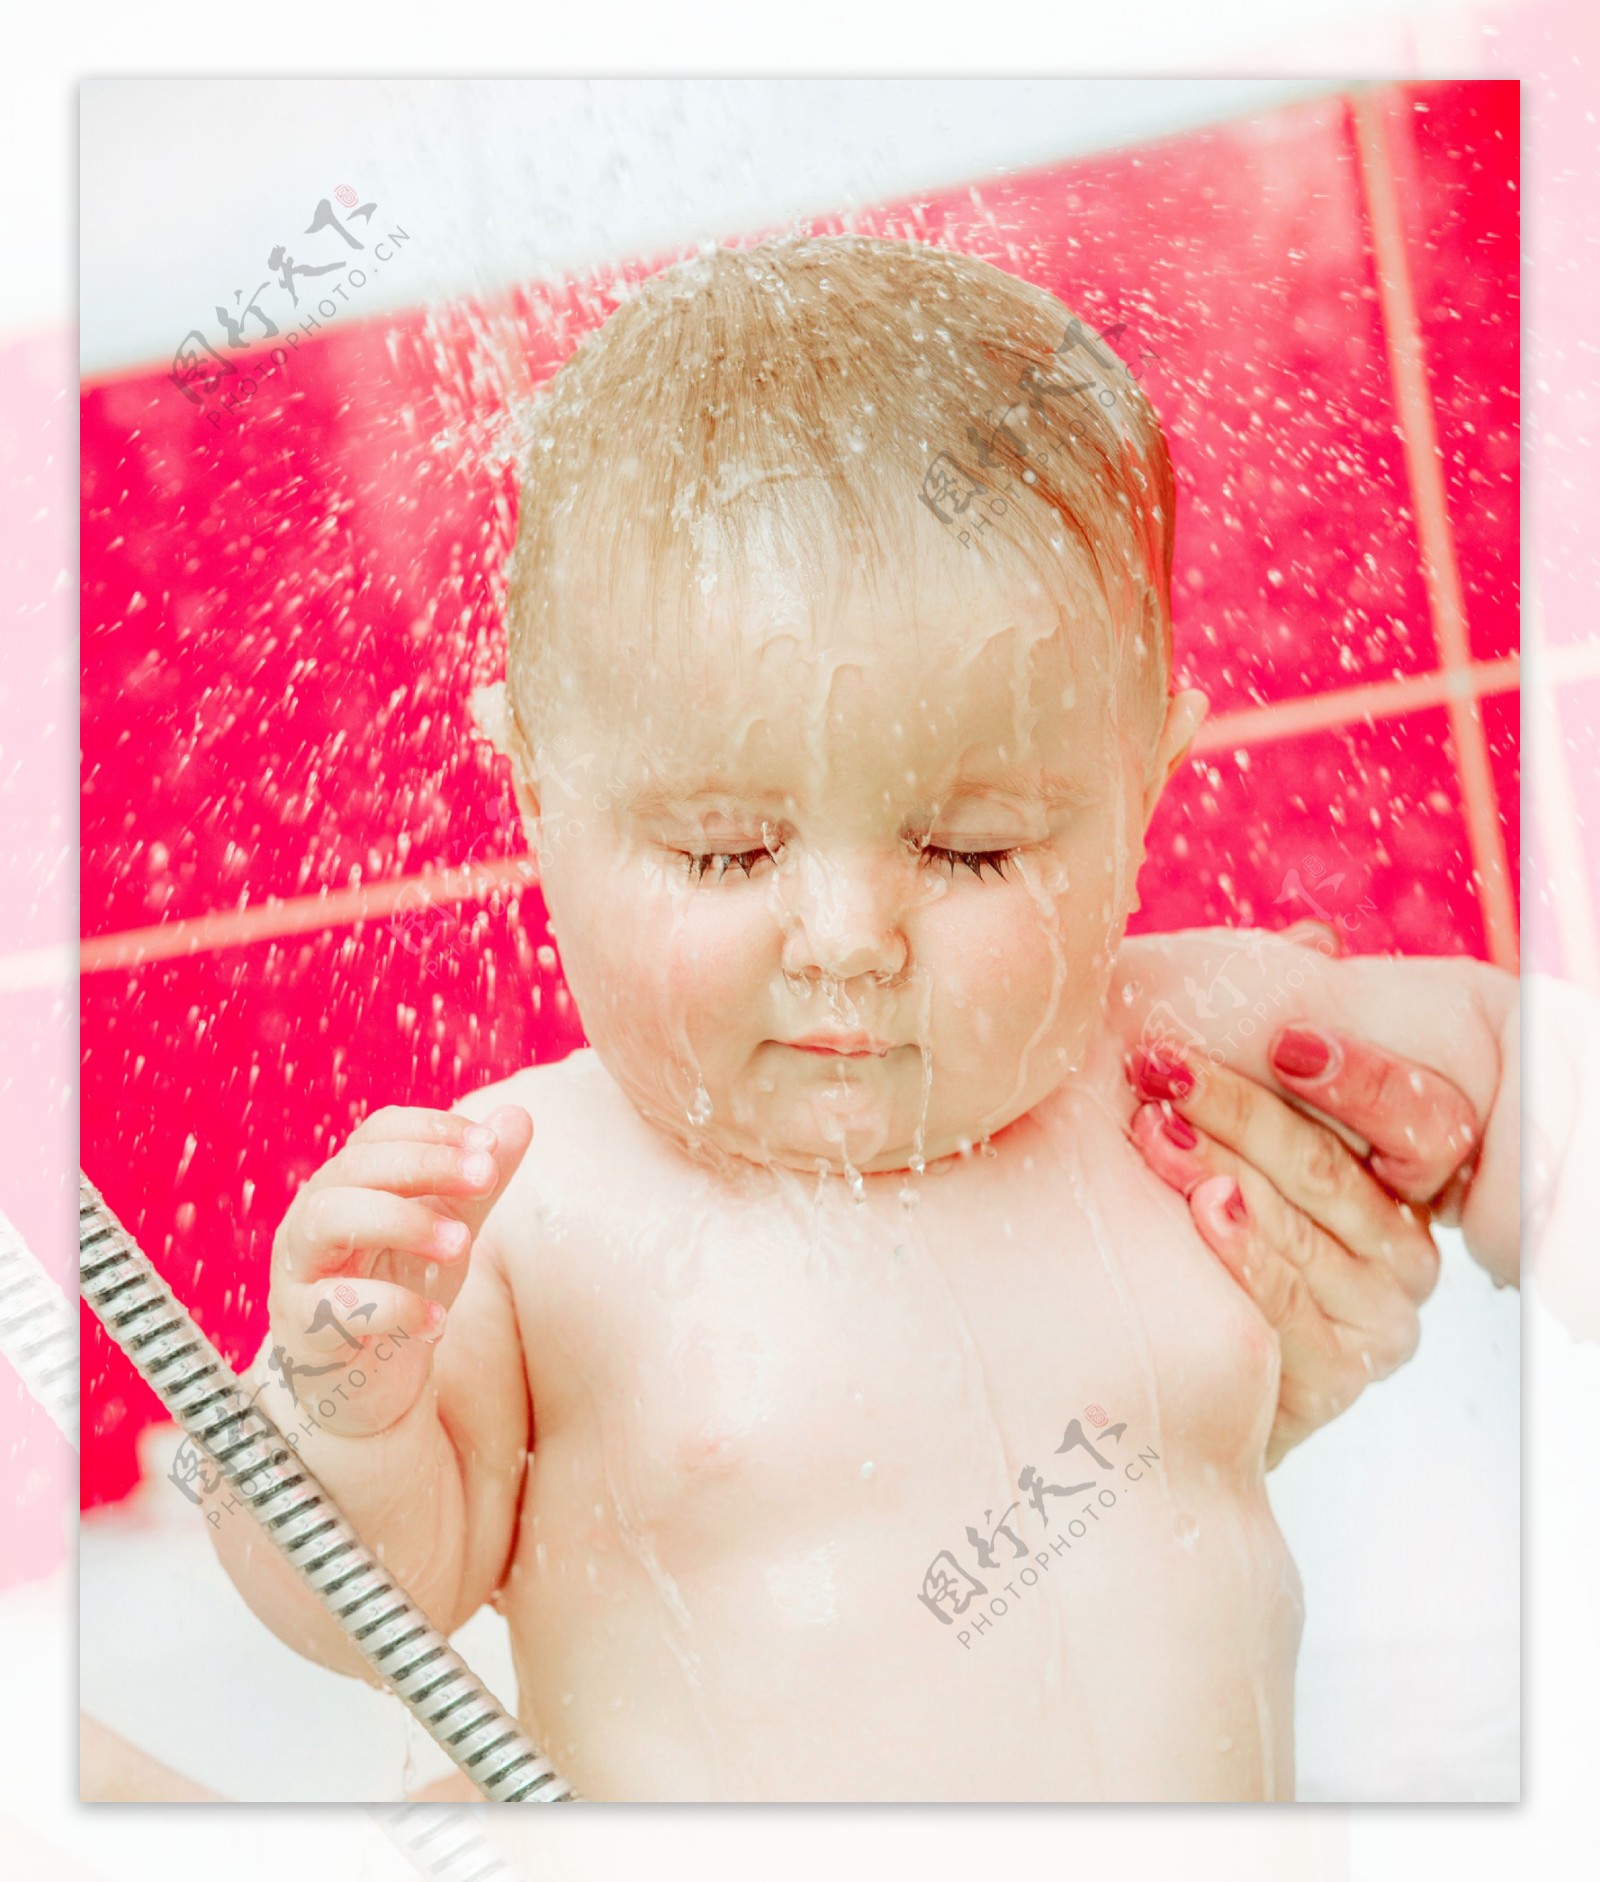 正在洗澡的宝宝图片